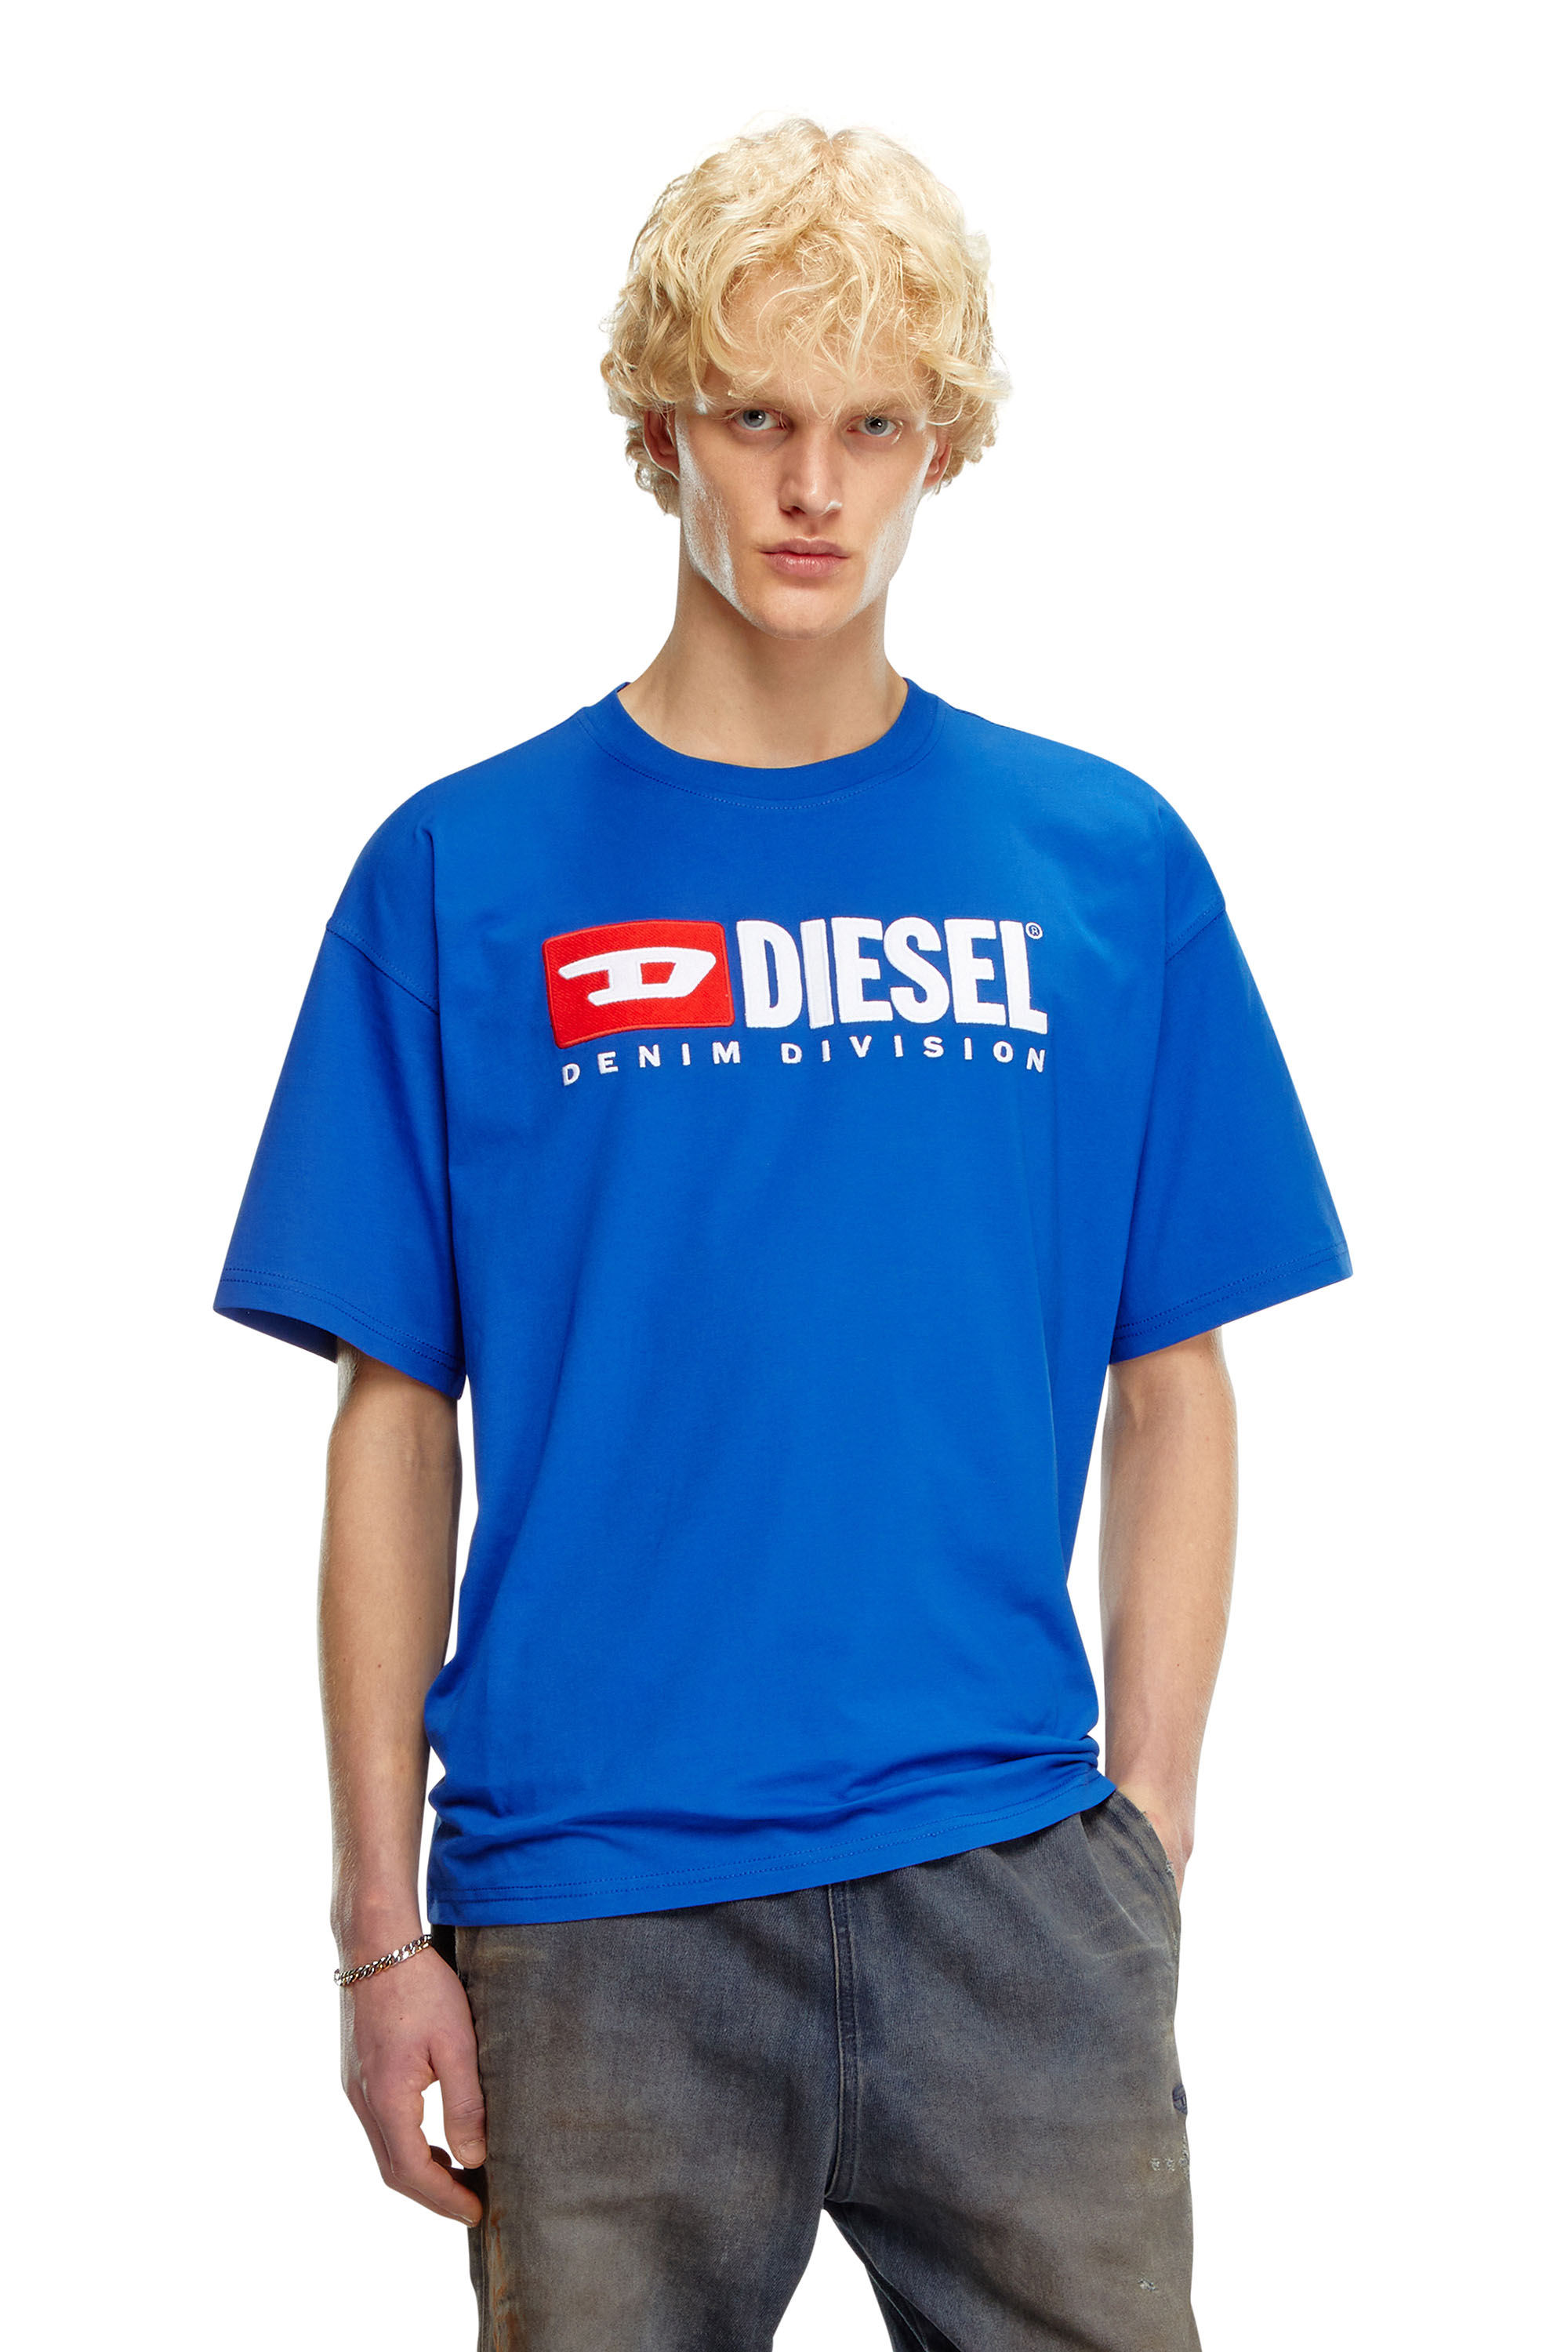 Diesel - T-BOXT-DIV, Blue - Image 1